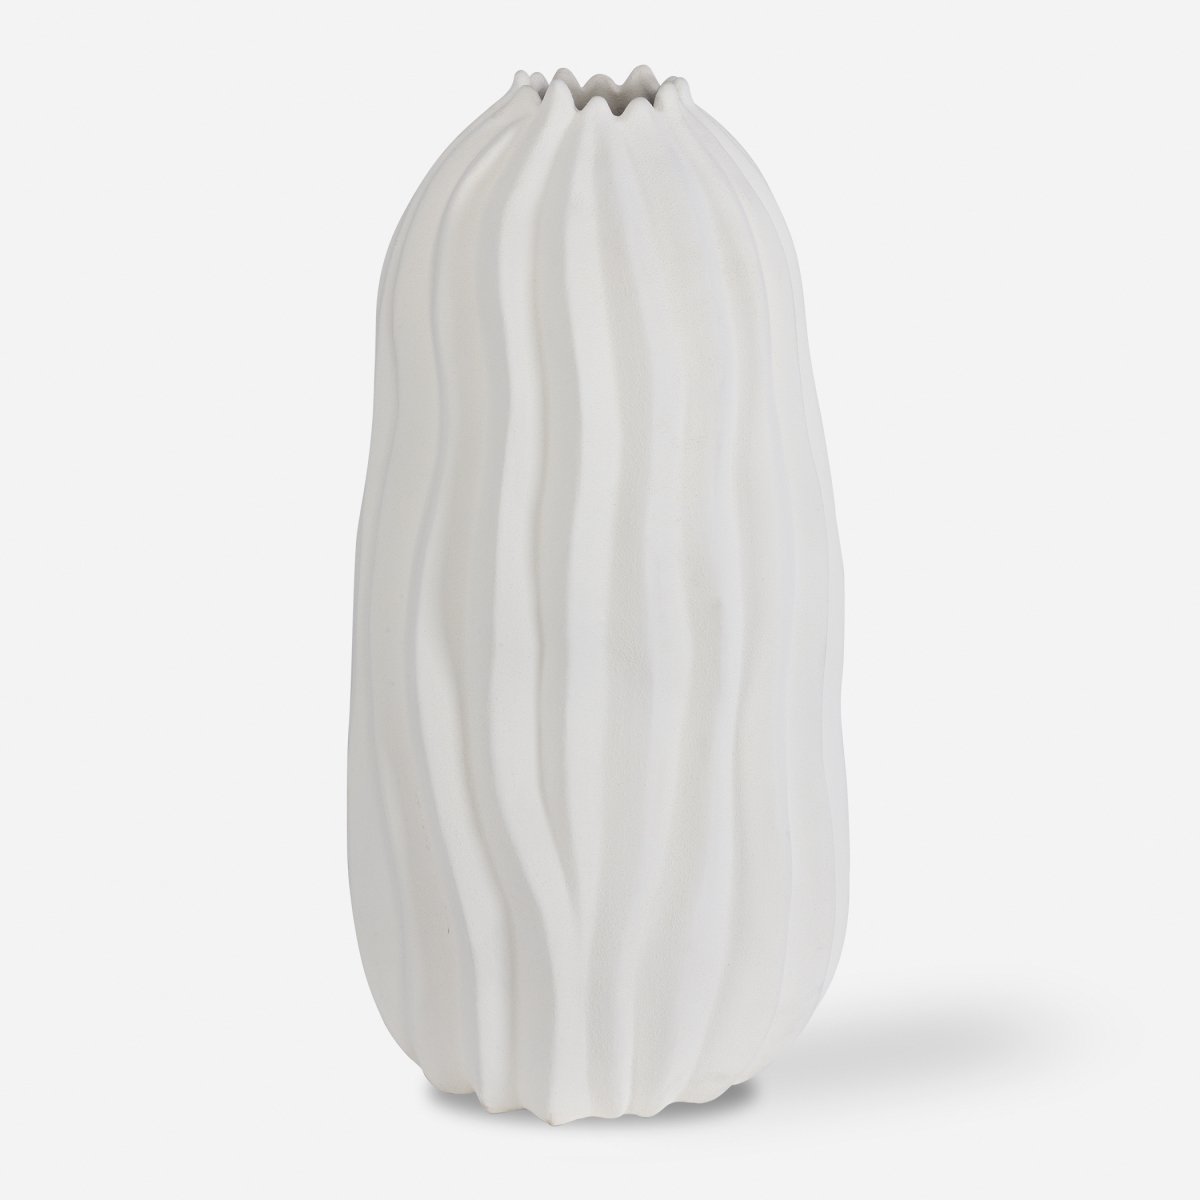 Picture of Uttermost 18108 26 x 13 x 13 in. Merritt White Floor Vase